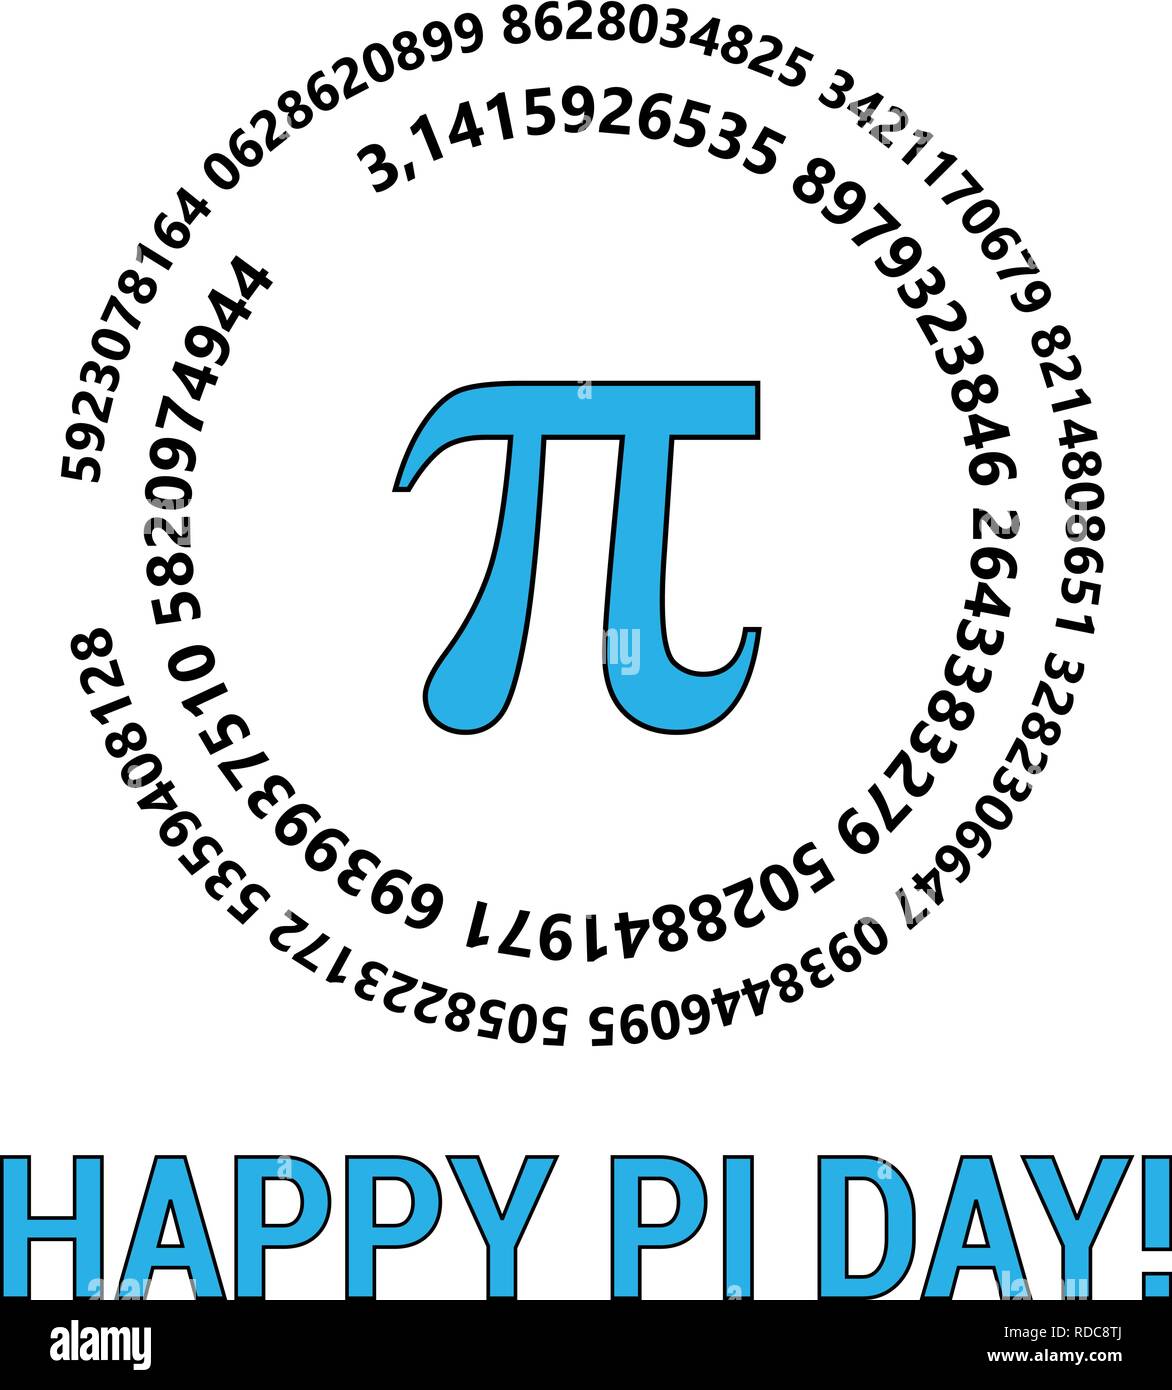 Heureux le jour de Pi célèbrent le jour de Pi. Constante mathématique. Le 14 mars. Rapport d'une circonférence de cercle s à son diamètre. Illustration de Vecteur